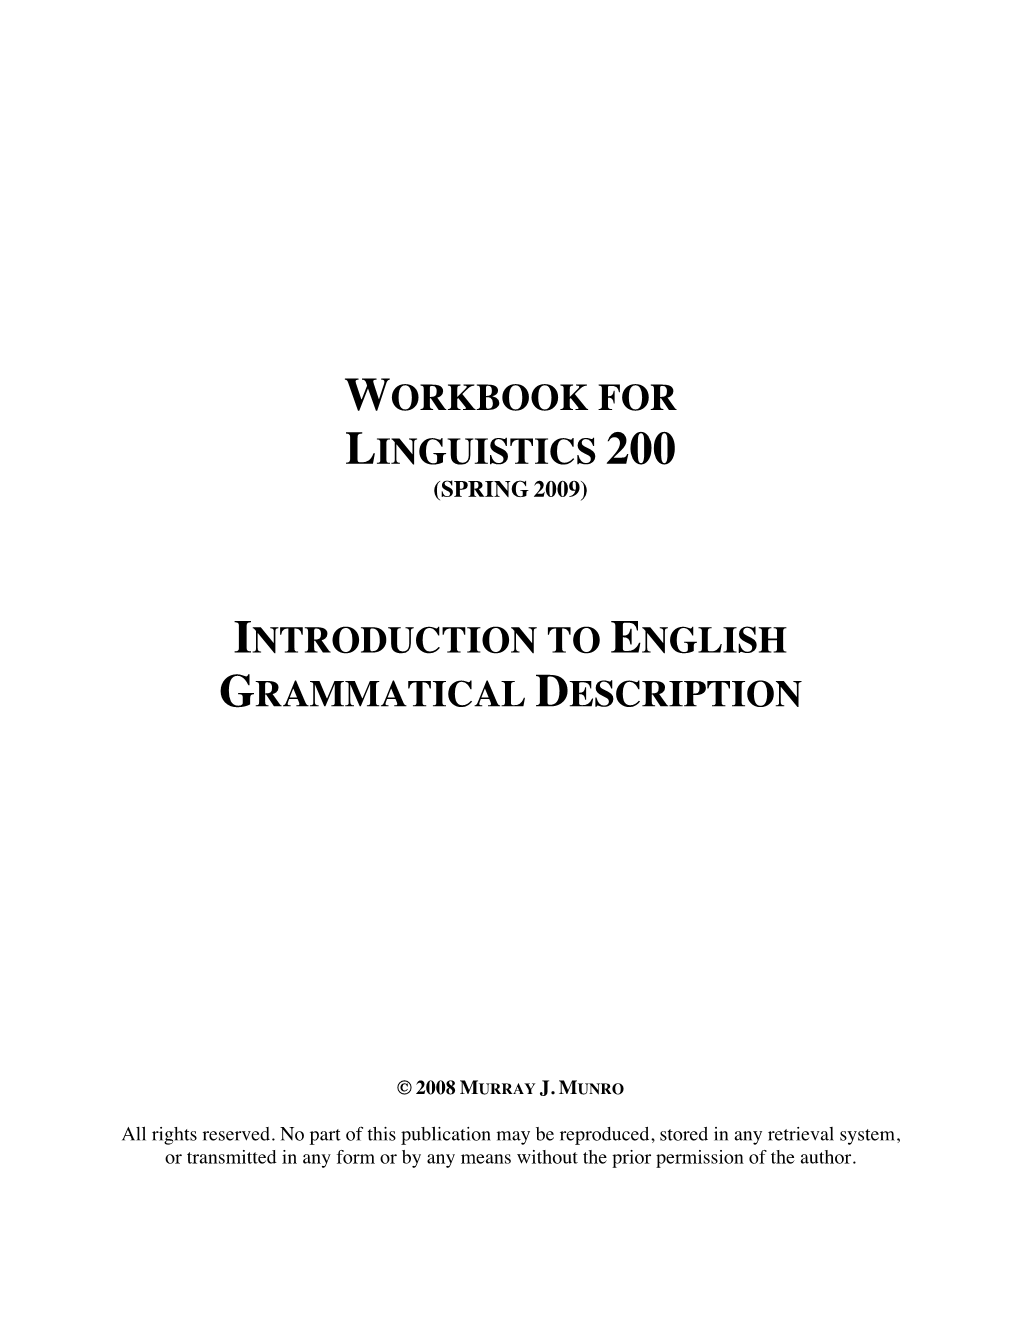 Workbook for Linguistics 200 (Spring 2009)